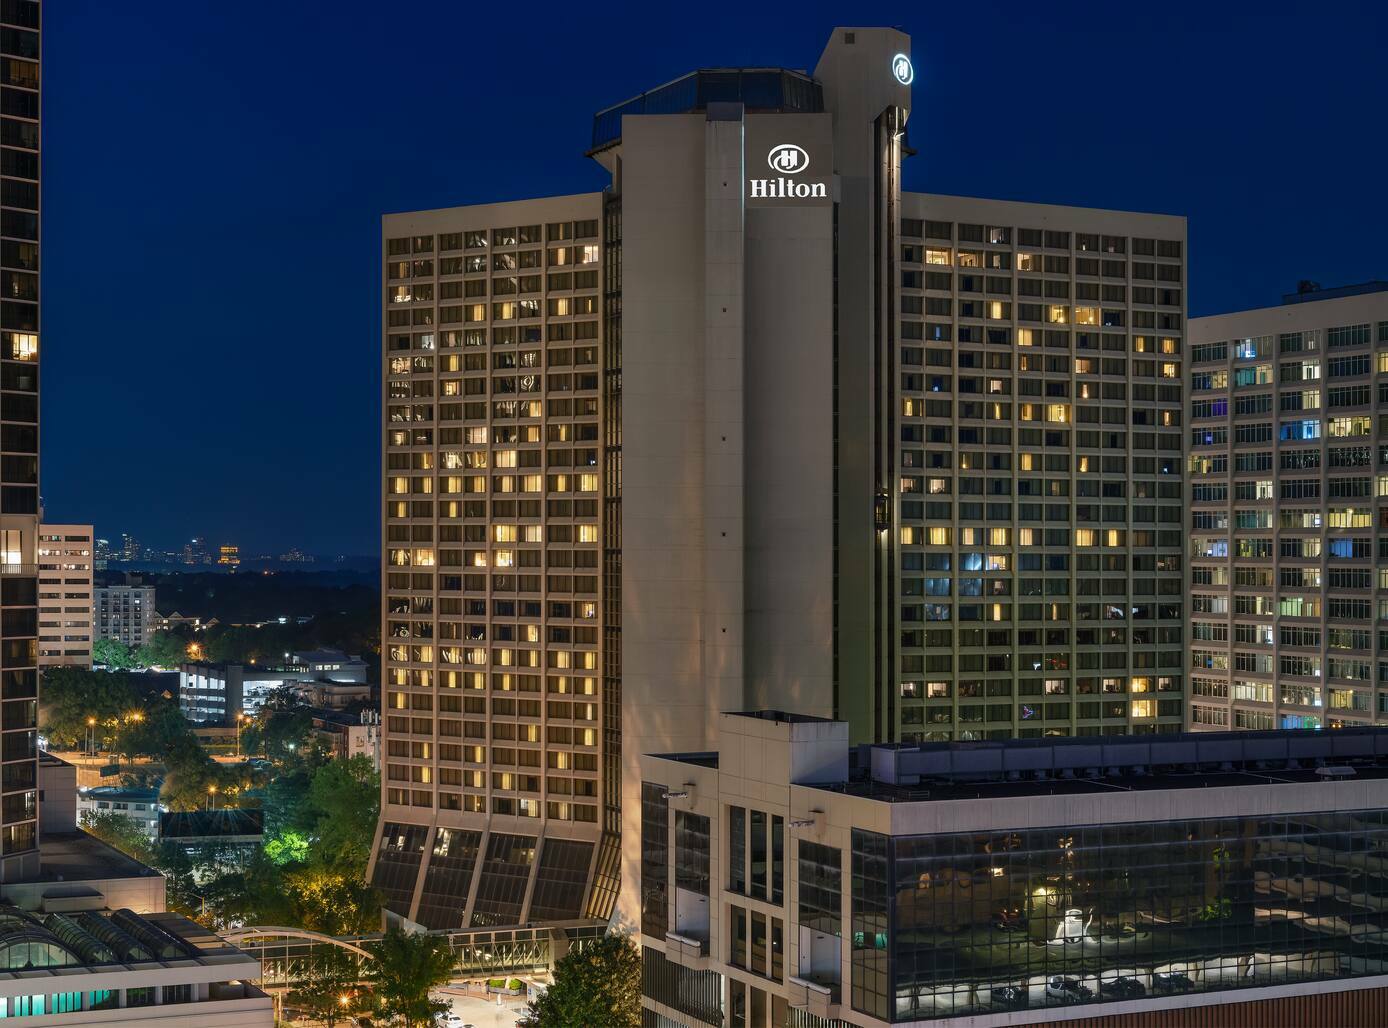 Photo of Hilton Atlanta, Atlanta, GA